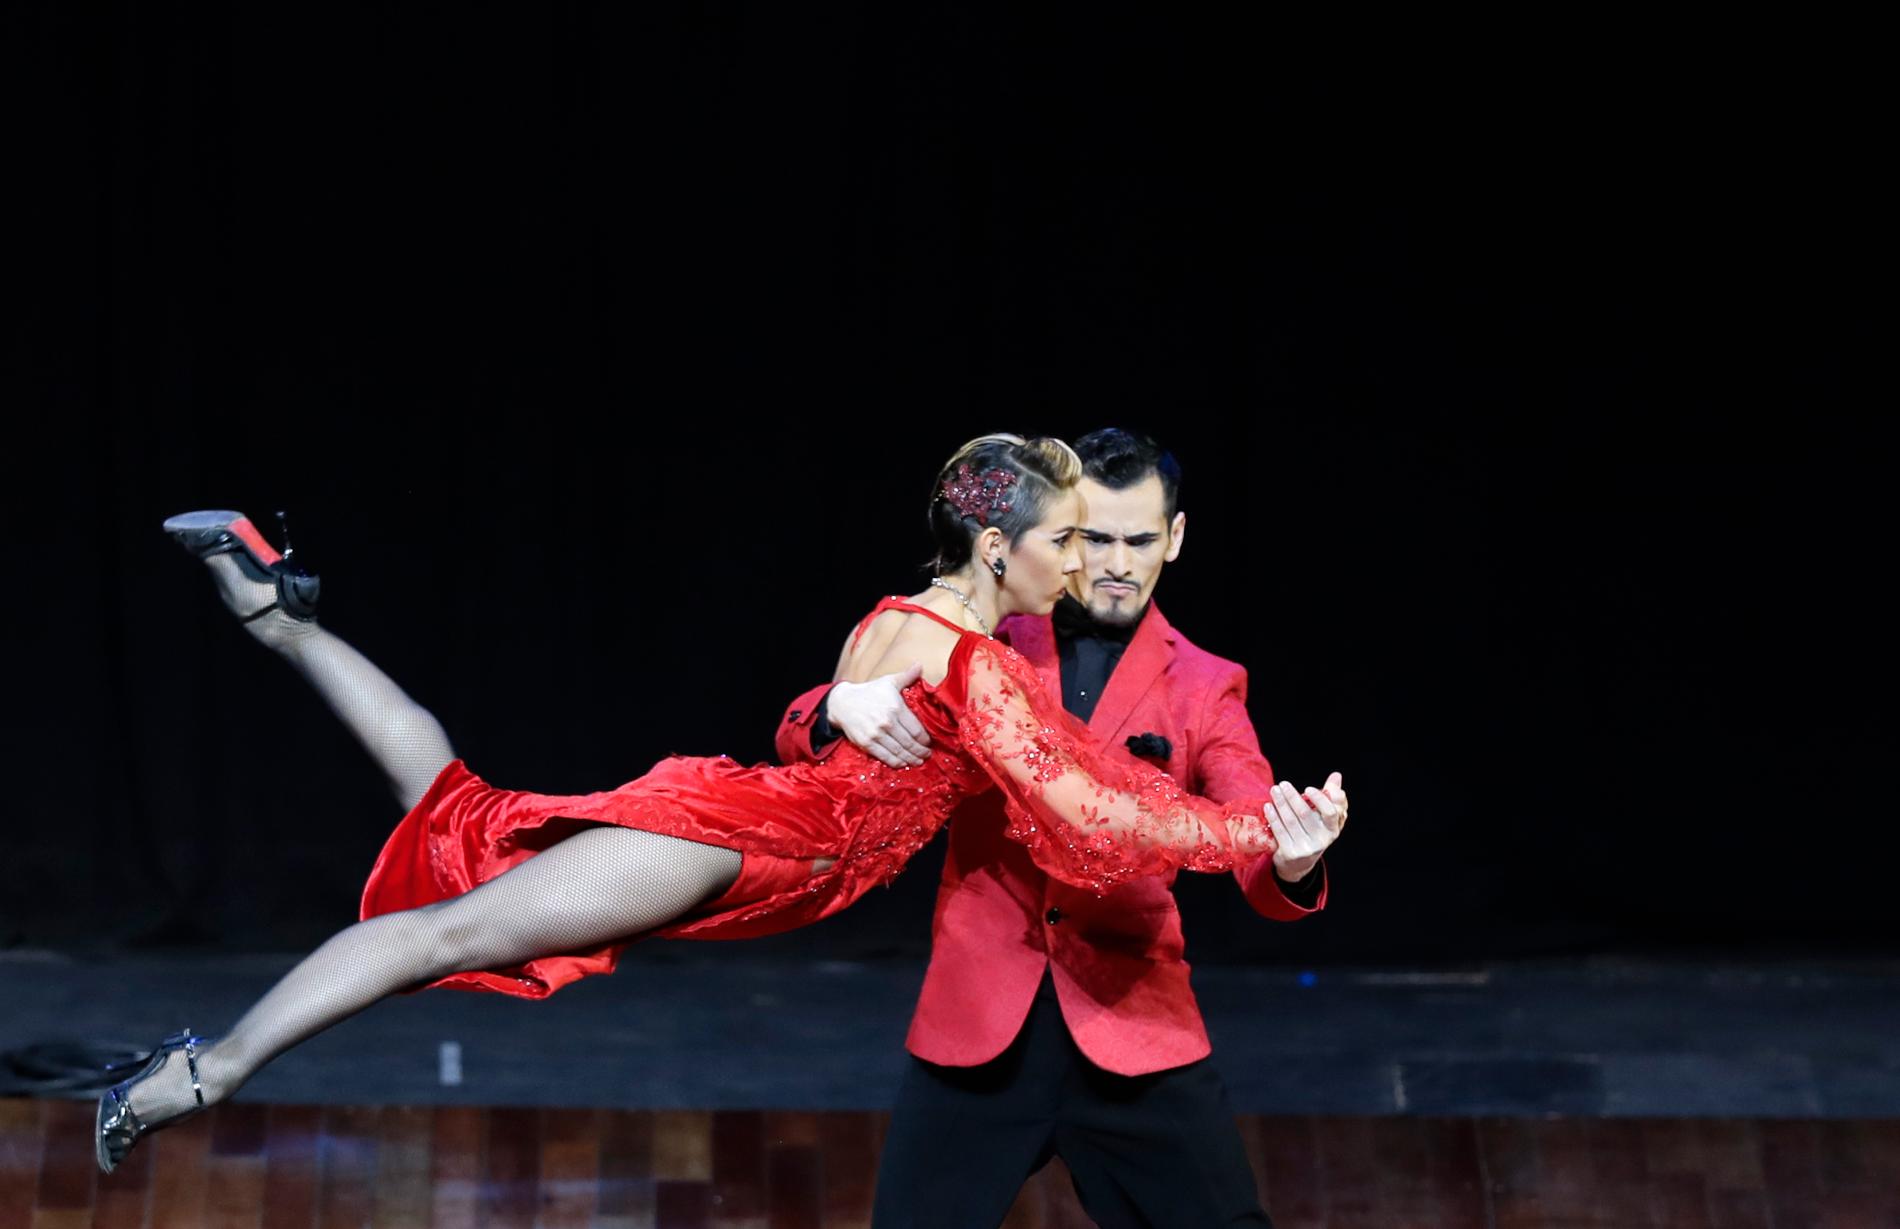 Det argentinska dansparet Juan Segui och Maira Sanchez vid fjolårets världsmästerskap i tango i Buenos Aires i Argentina.